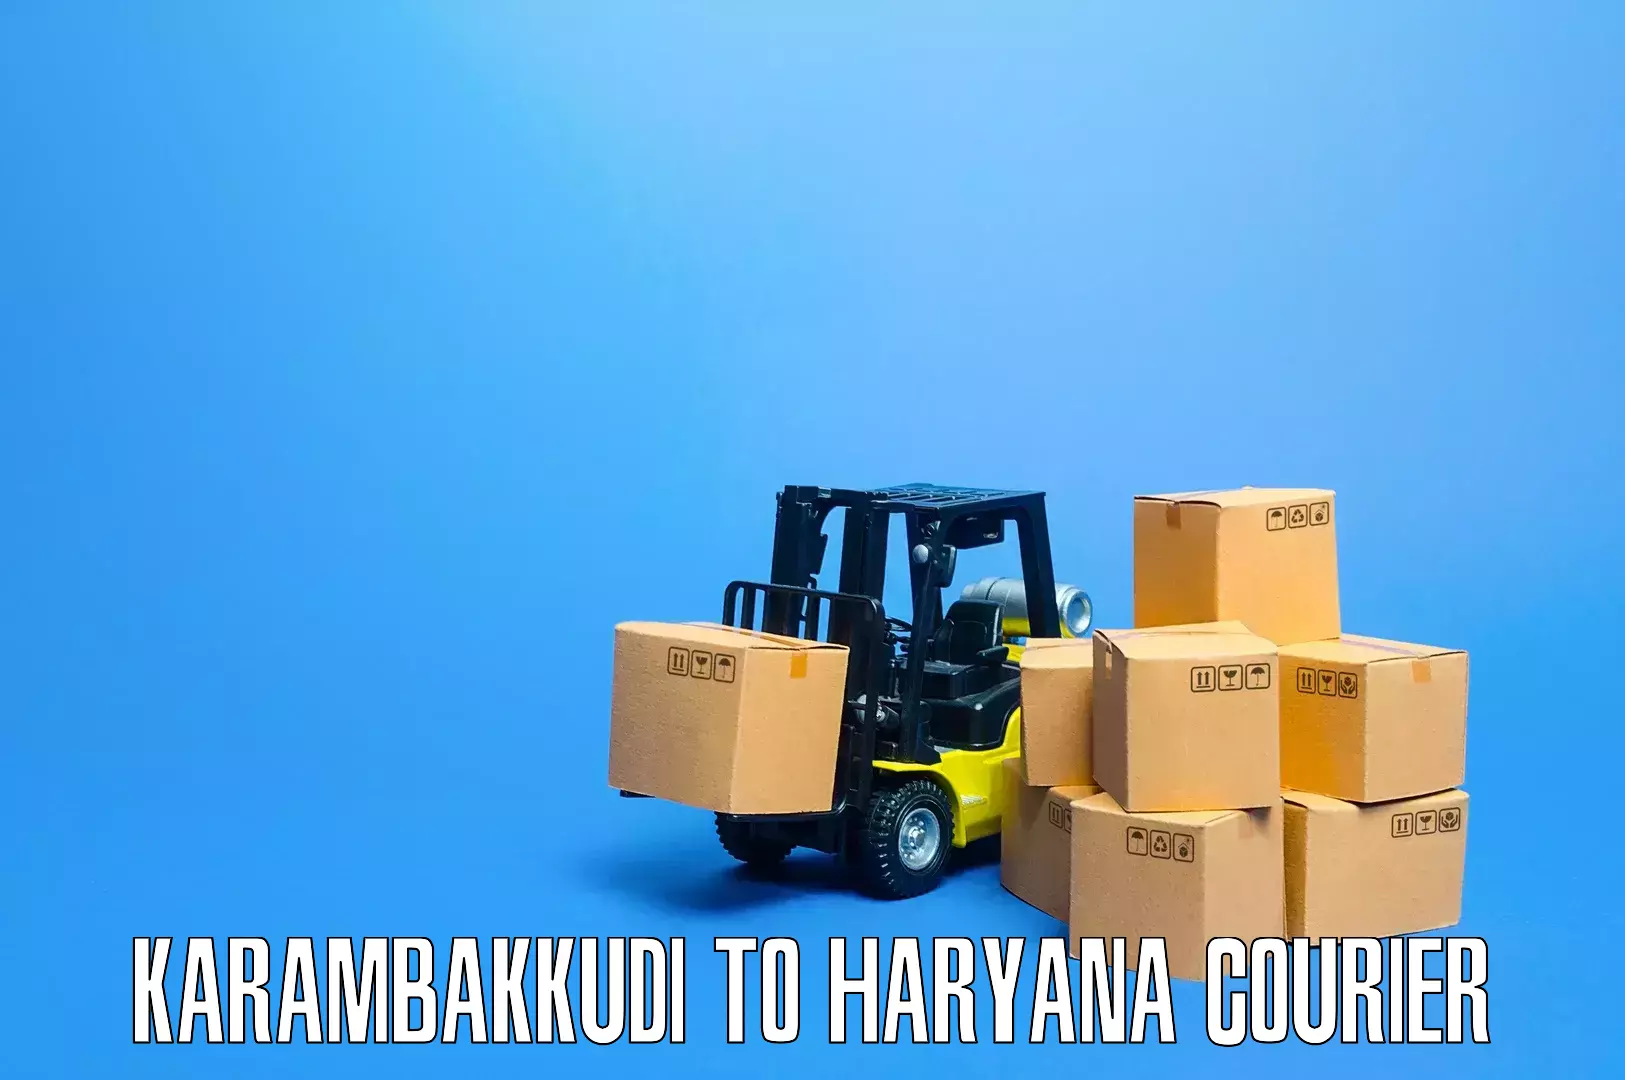 Professional moving company Karambakkudi to Panchkula